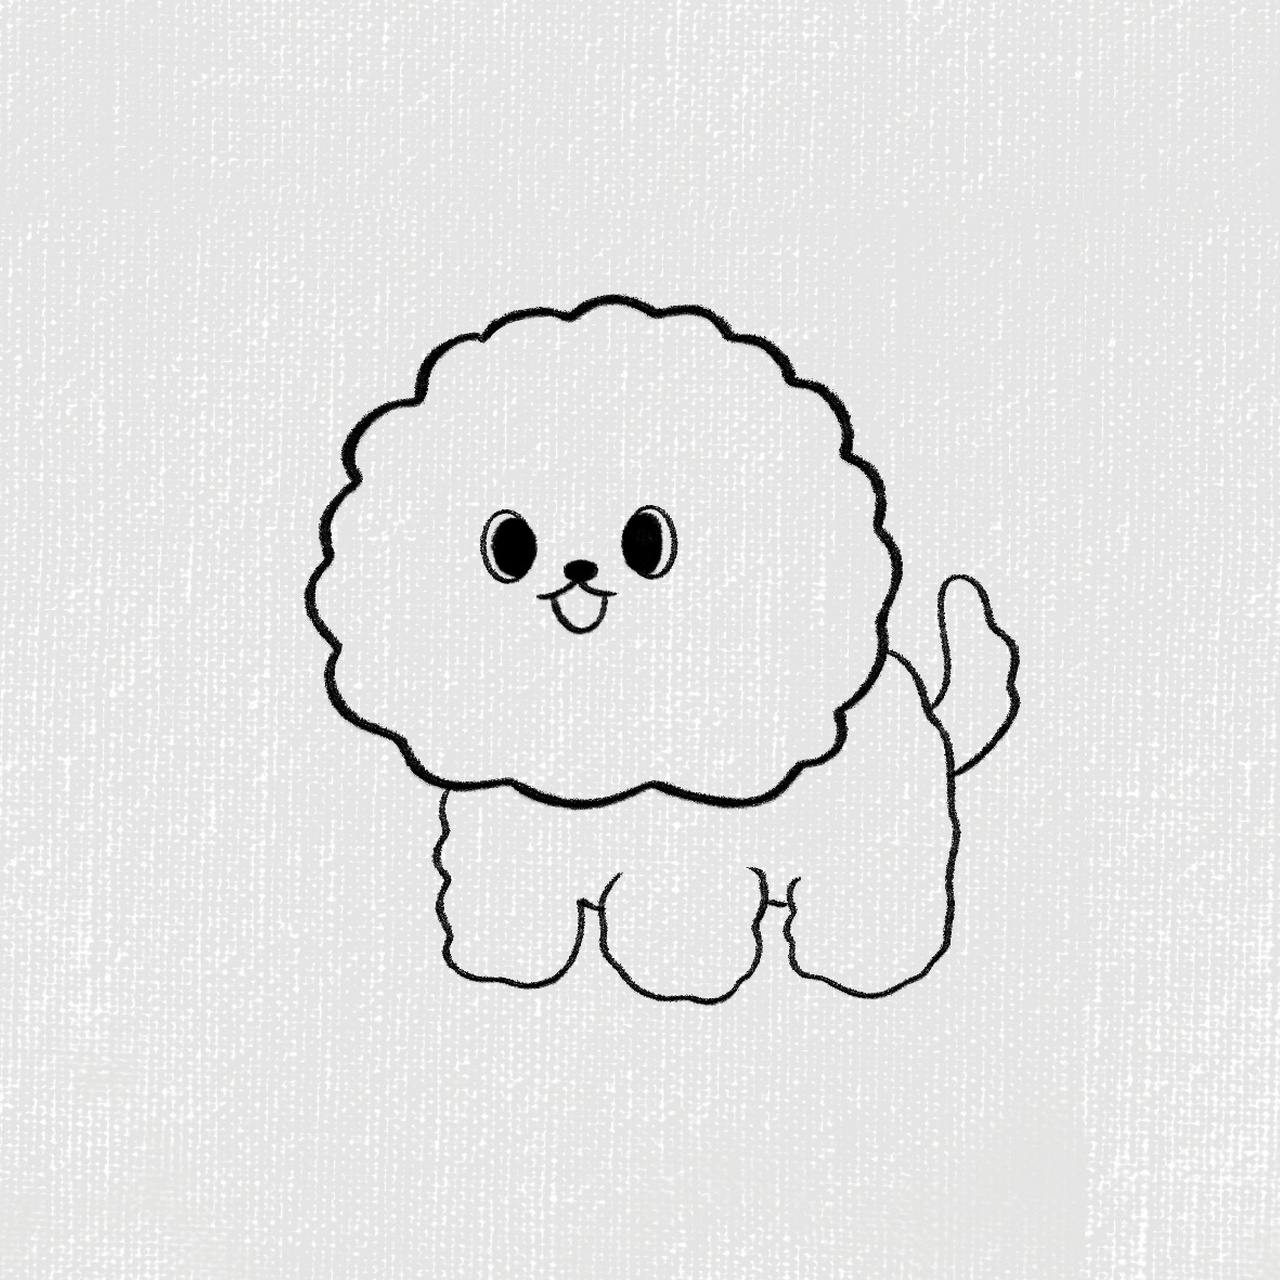 画可爱的小狗 画法图片